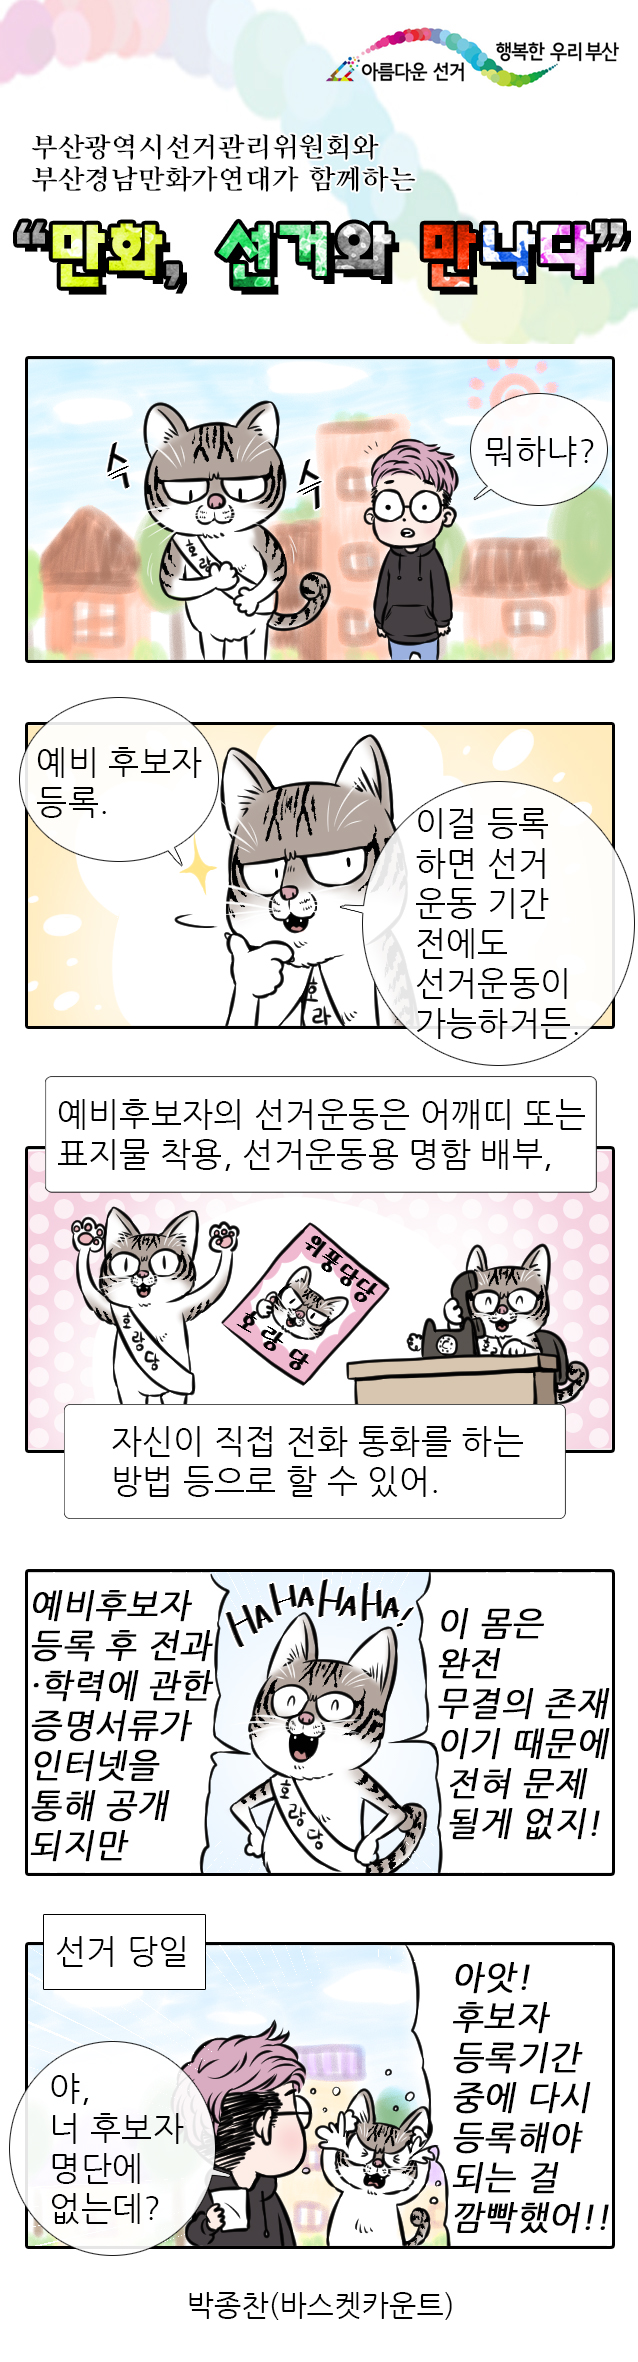 부산시선관위와 부산경남만화가연대가 함께하는 선거만화